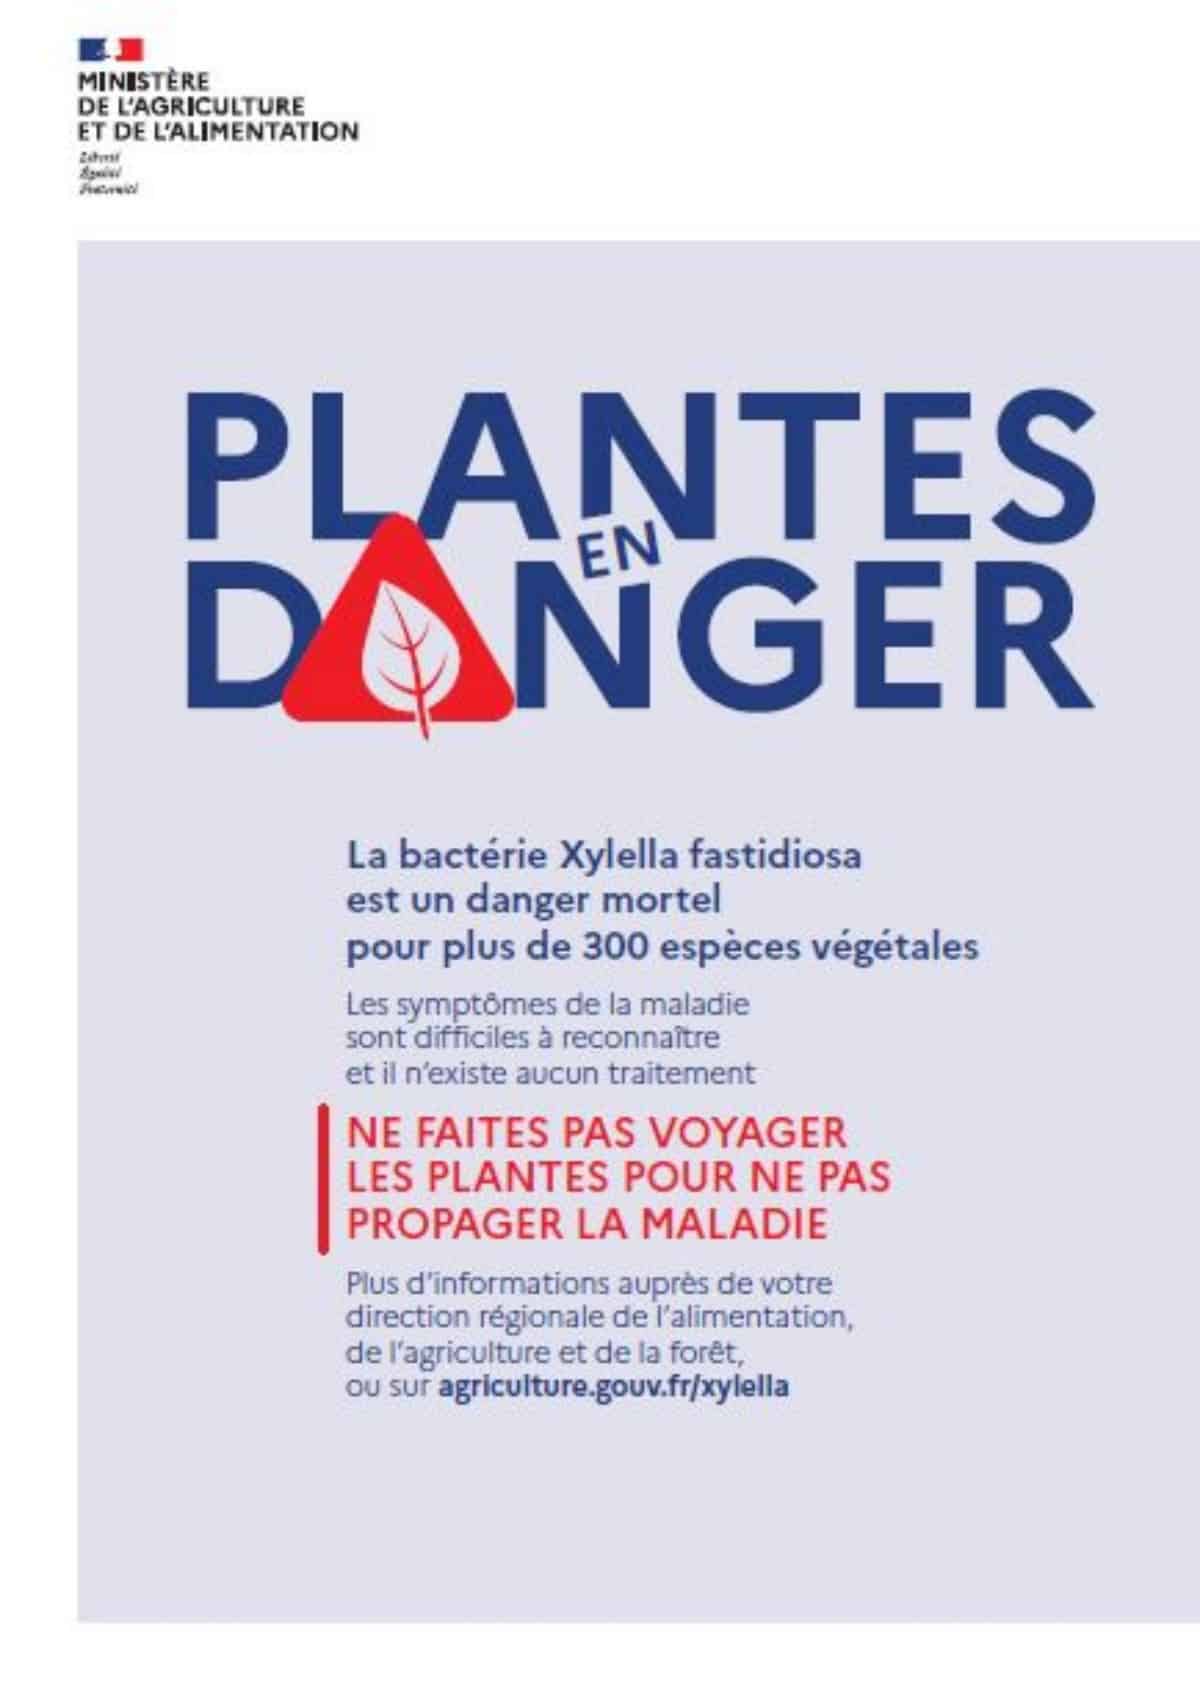 Plantes en danger : Xylella fastidiosa, une bactérie mortelle pour 300 espèces végétales